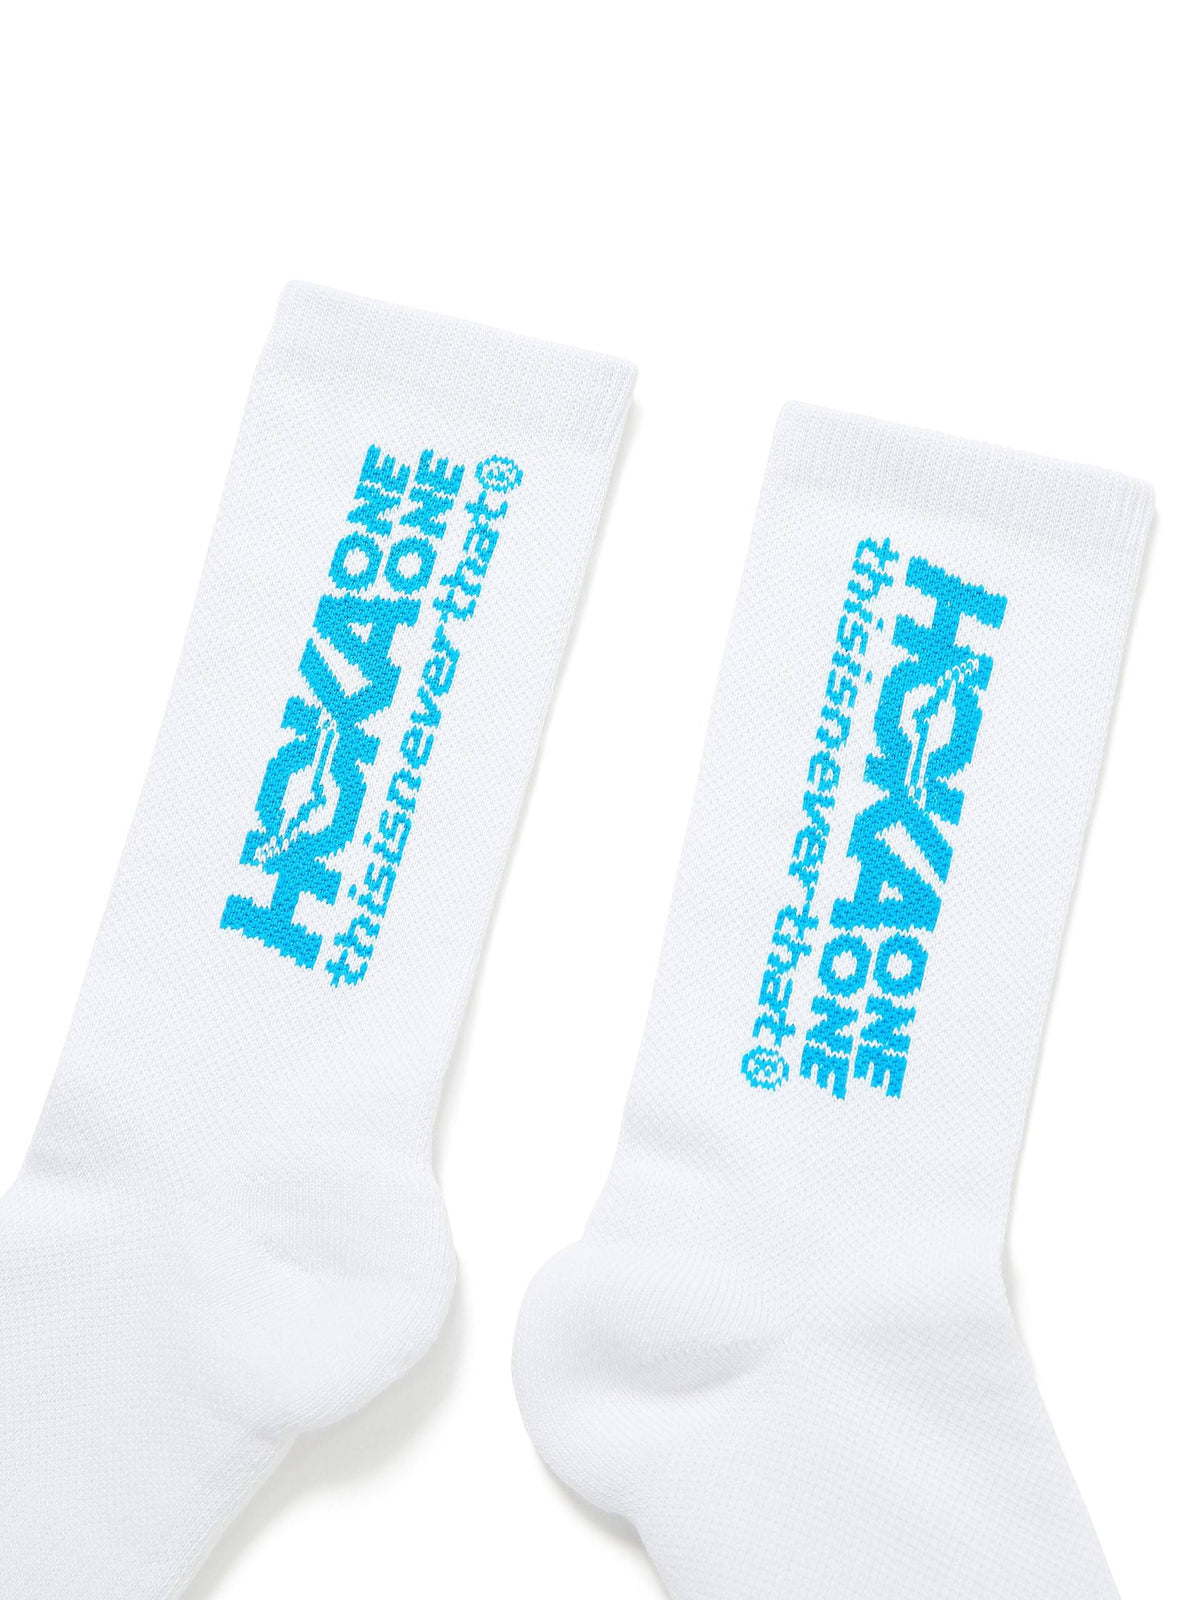 TNT HOKA Performance Crew Socks Accessory 